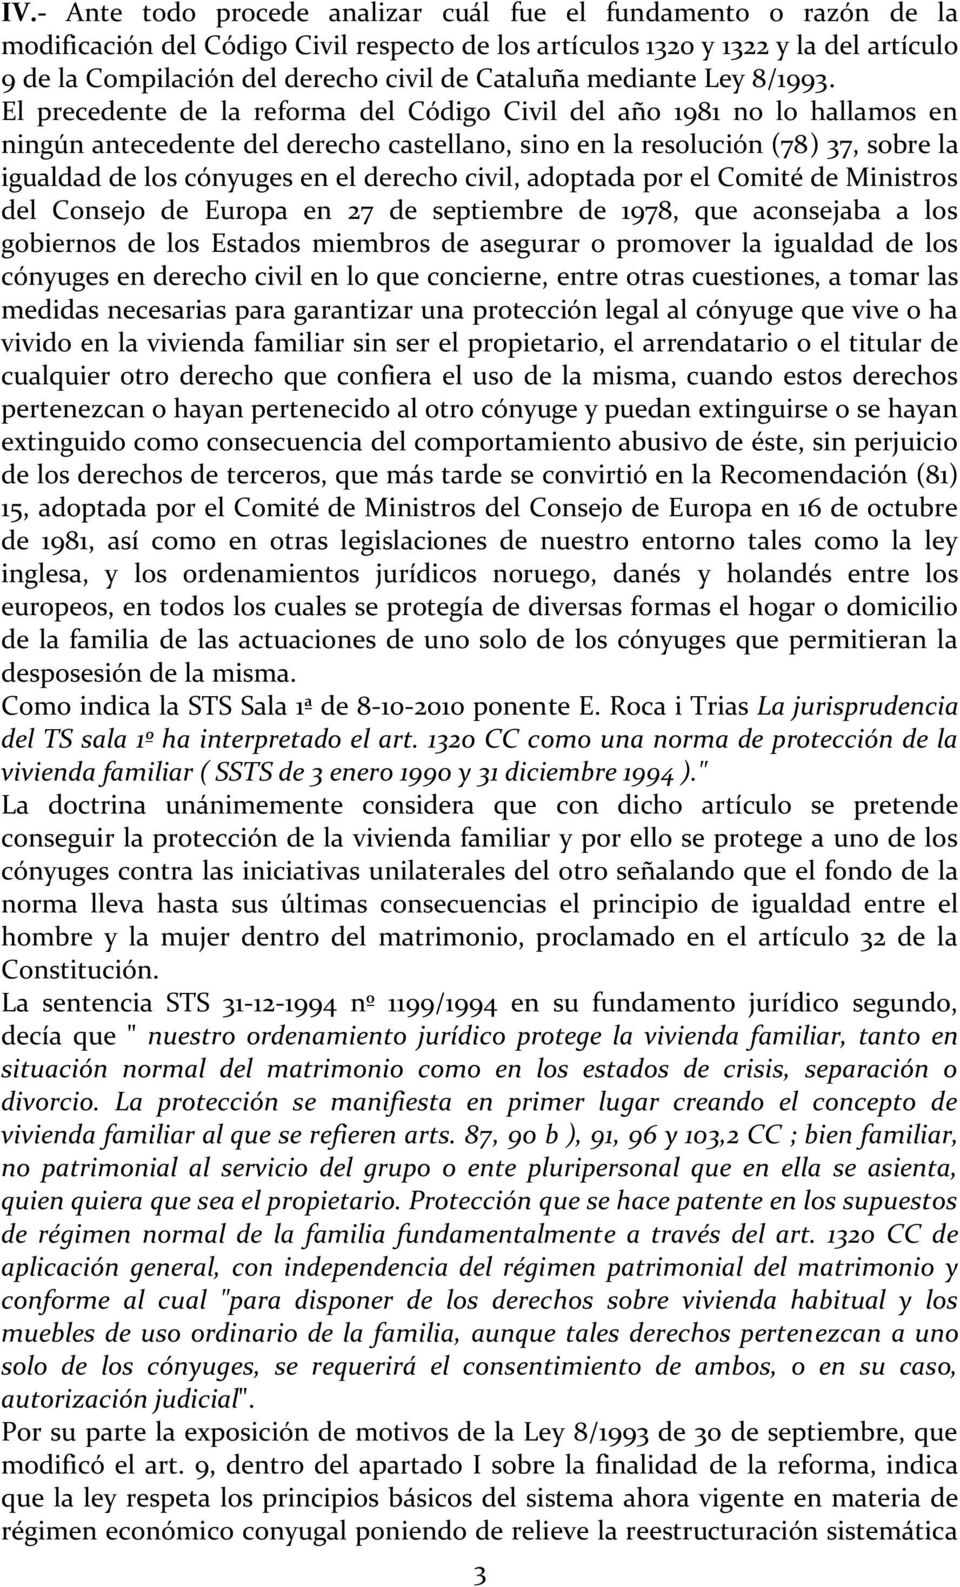 El precedente de la reforma del Código Civil del año 1981 no lo hallamos en ningún antecedente del derecho castellano, sino en la resolución (78) 37, sobre la igualdad de los cónyuges en el derecho